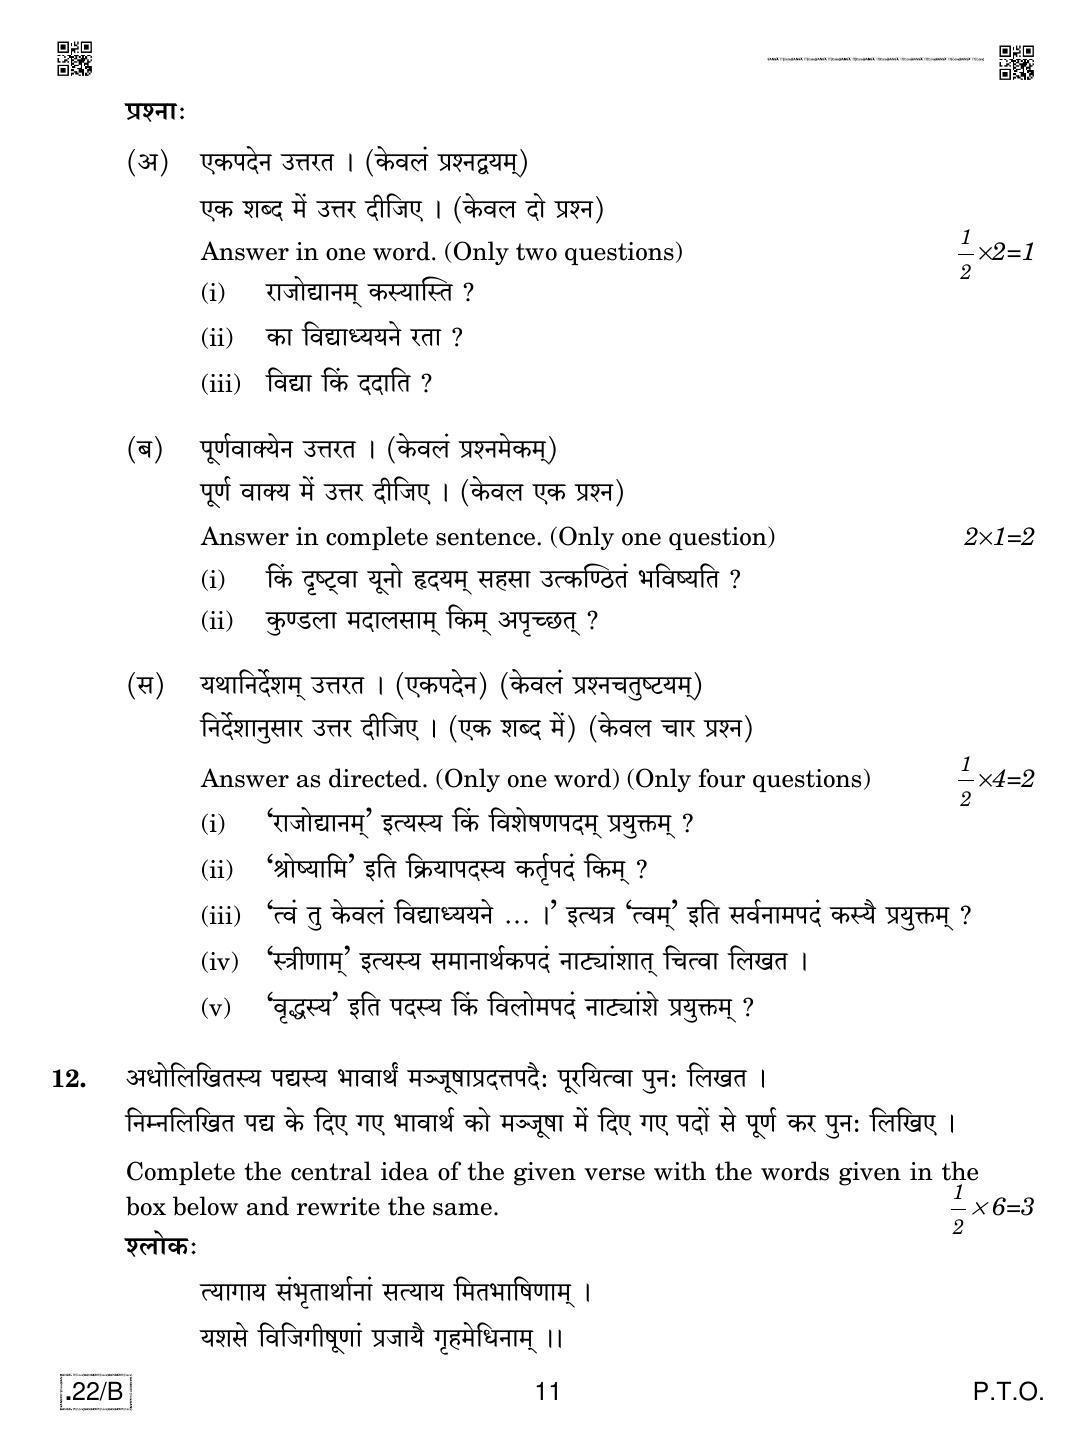 CBSE Class 12 Sanskrit Core 2020 Compartment Question Paper - Page 11